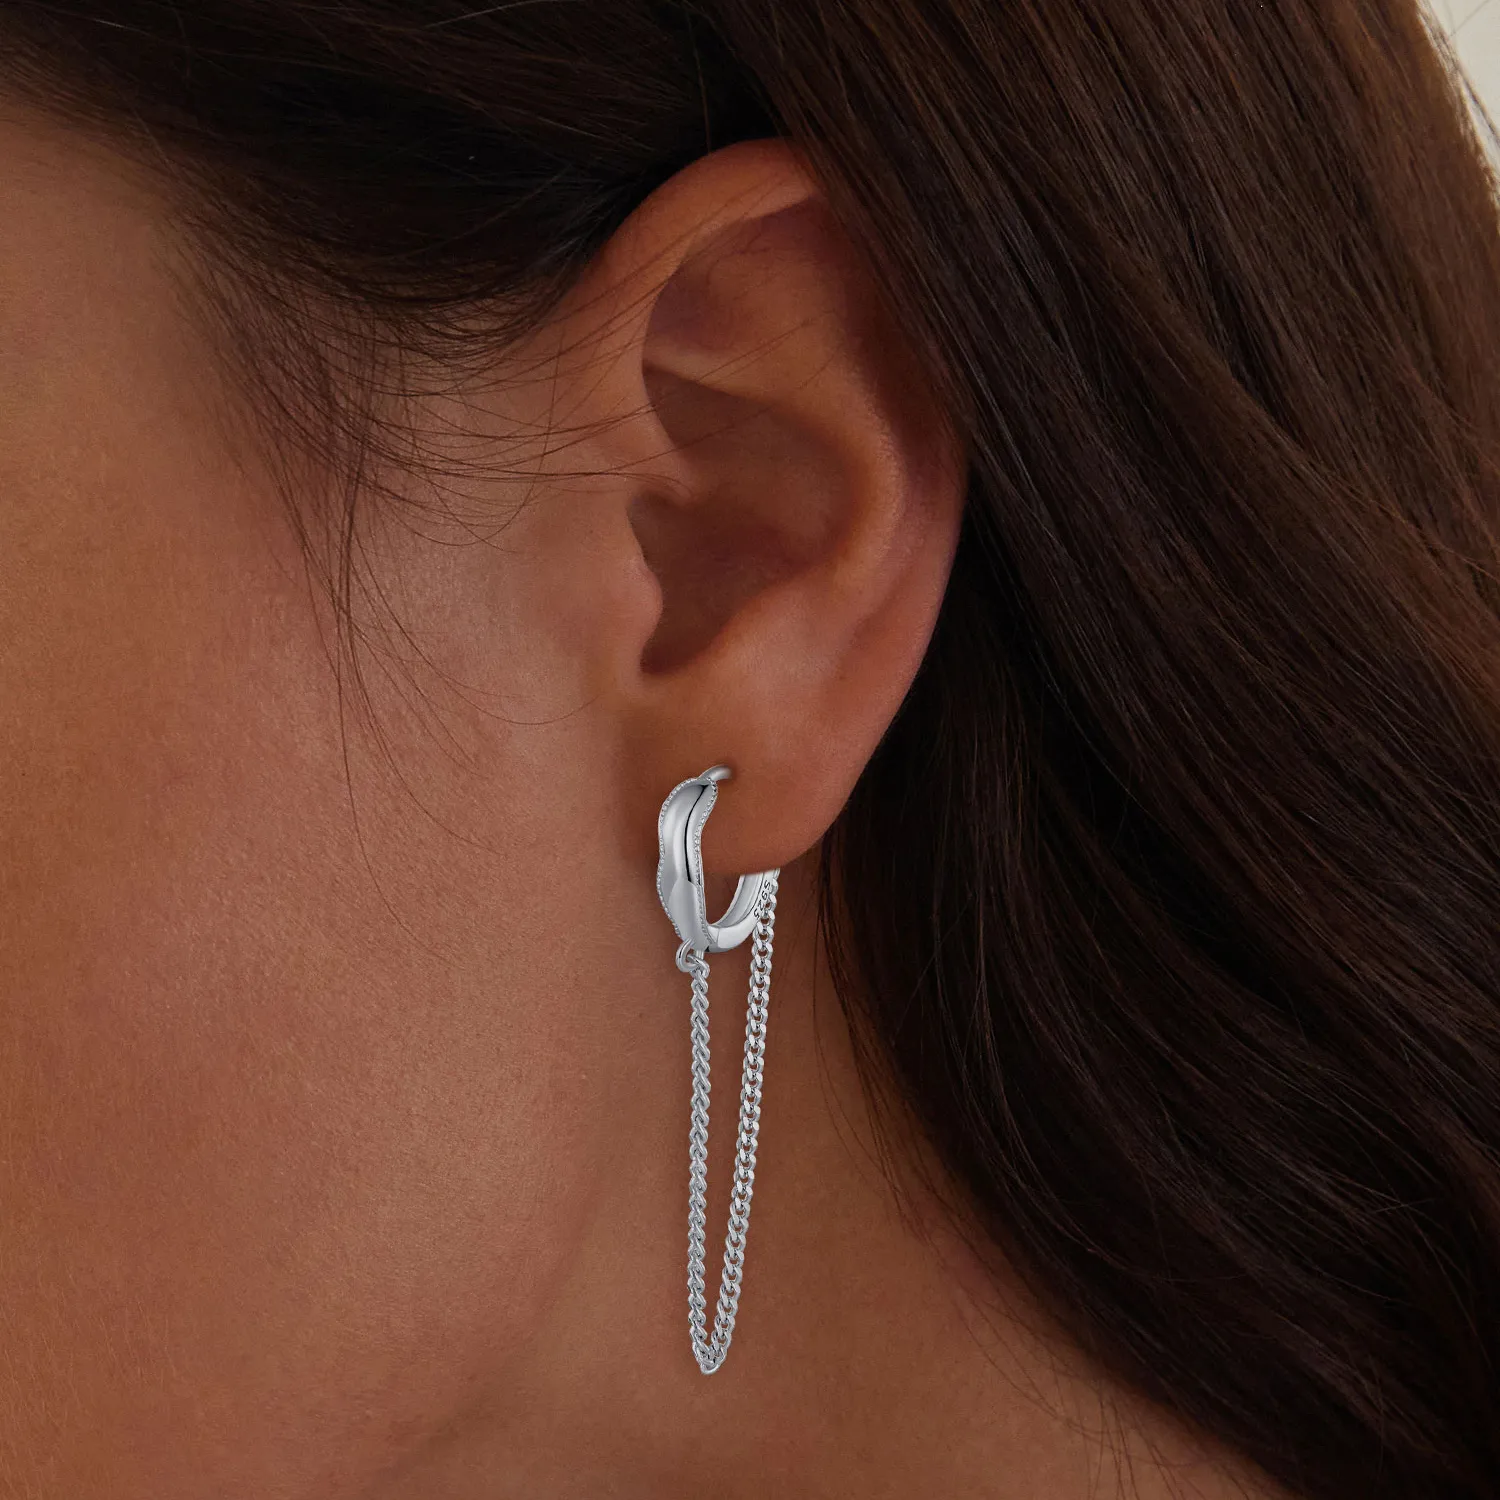 Pandora Style Tassel Hoop Earrings - BSE897